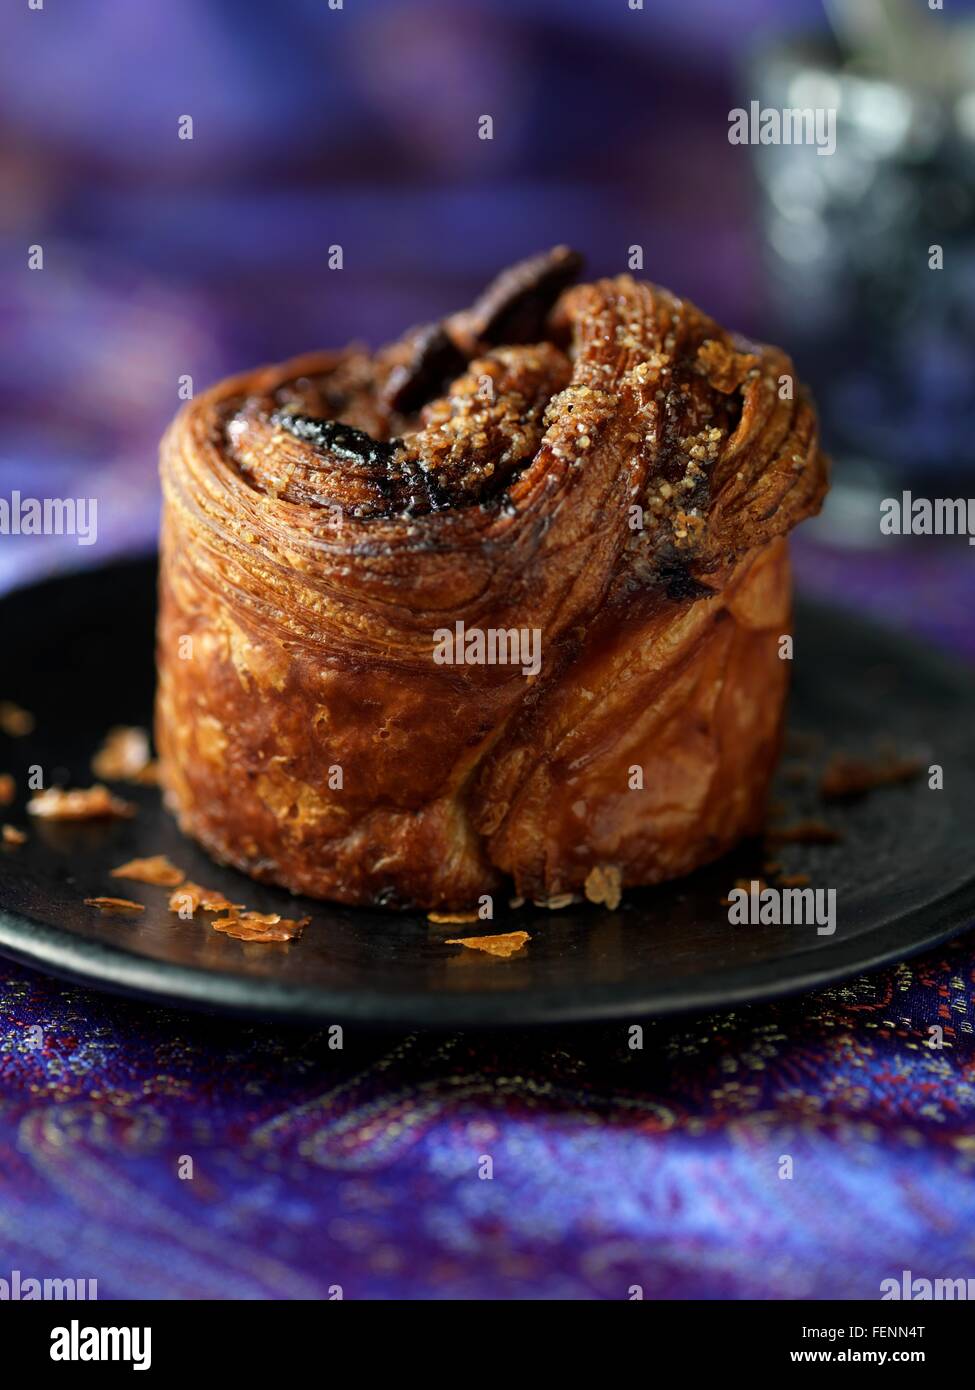 Pecan tart on plate Stock Photo